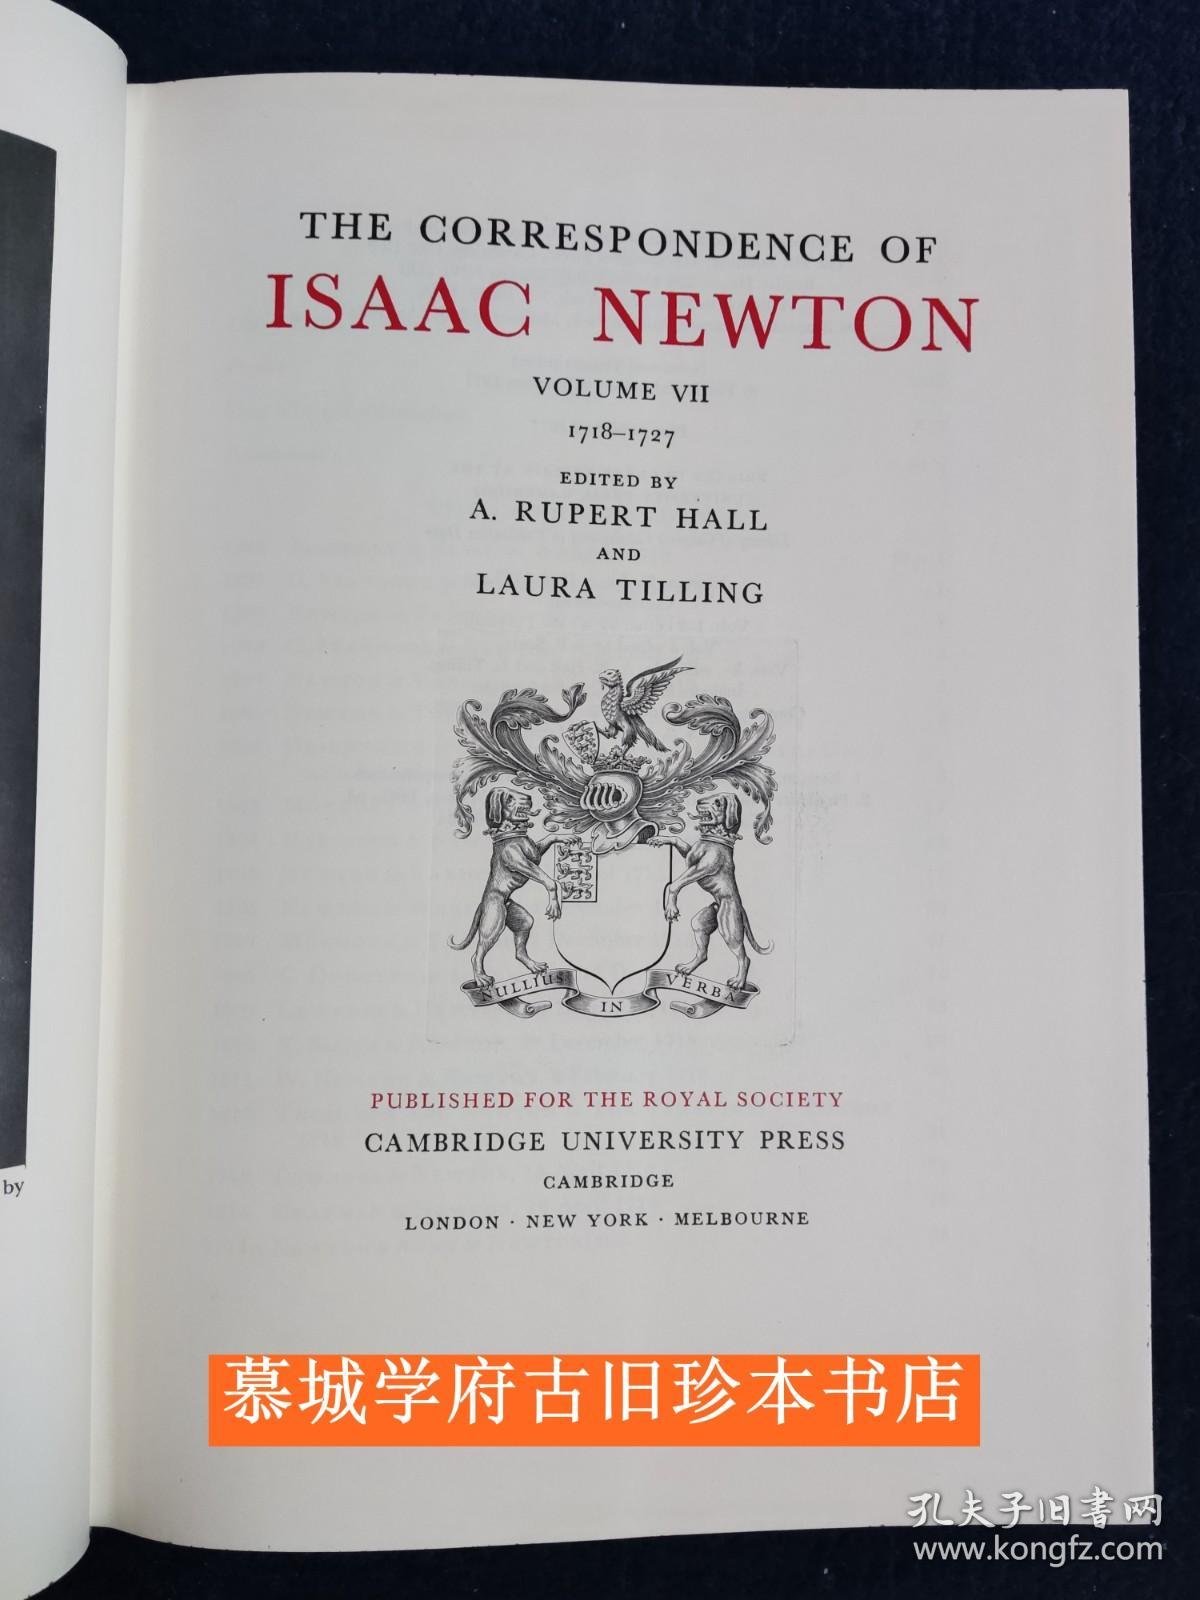 【全品】布面精装/书衣/英文原版《牛顿书信集》第七册 （1718-1727） The Correspondence of Isaac Newton VOL 7